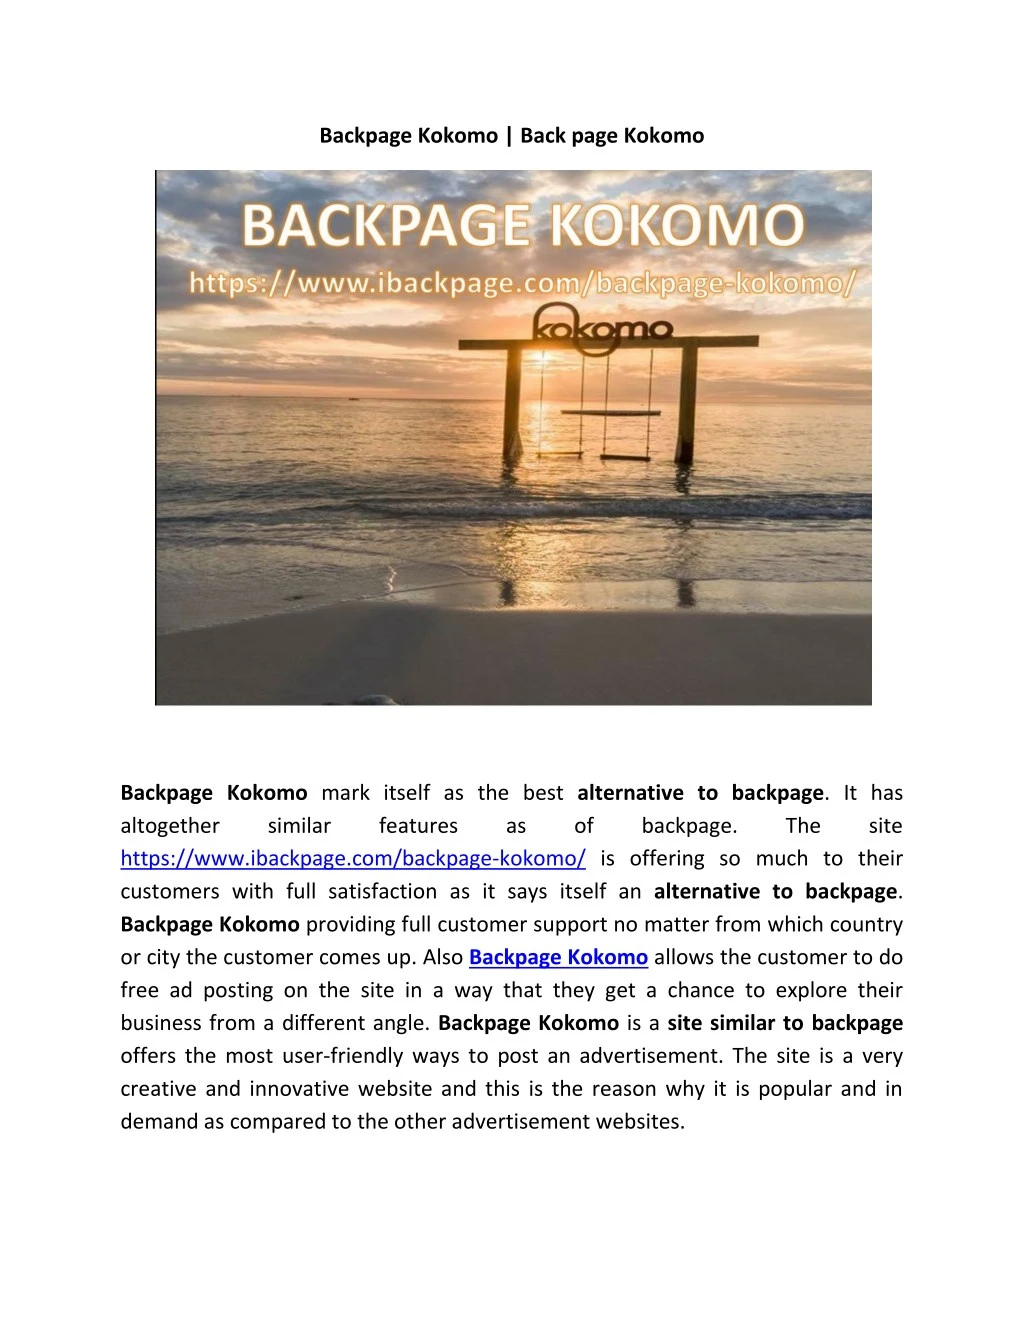 backpage kokomo back page kokomo